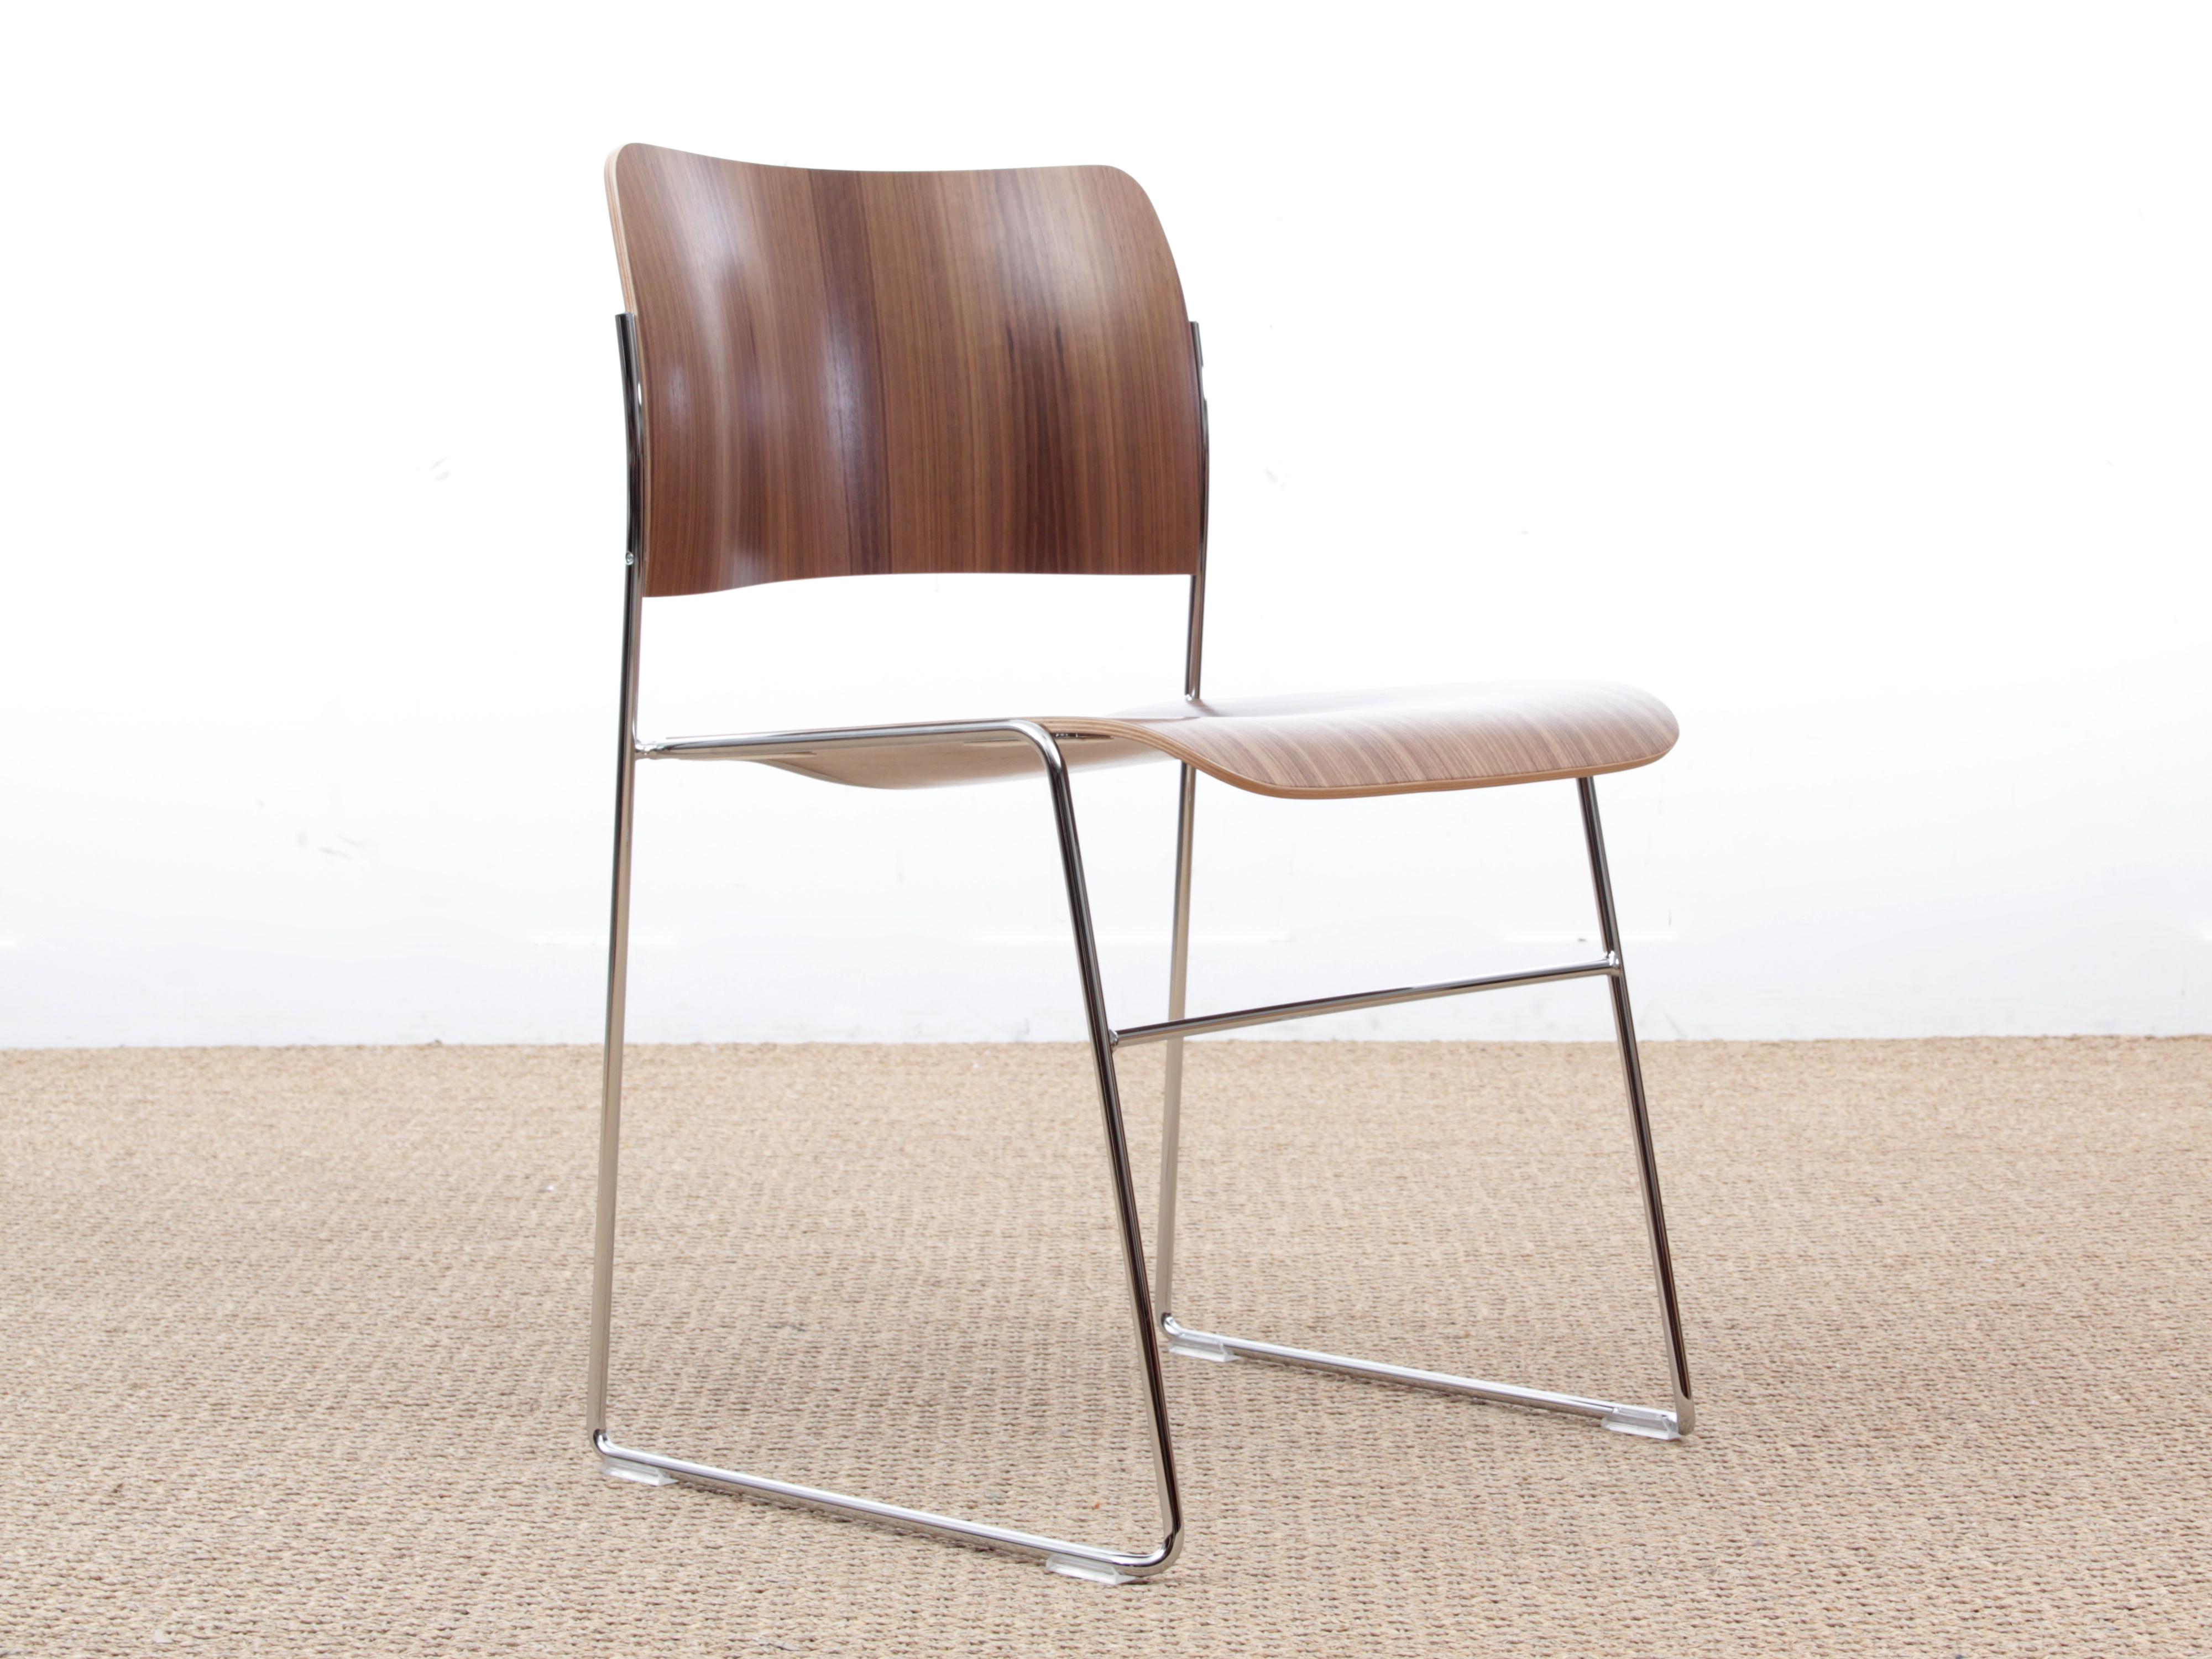 40/4 Stuhl von David Rowland, neue Ausgabe. Seine eleganten Linien, seine hervorragende Ergonomie und seine unübertroffene Fähigkeit, Raum zu schaffen, ohne Platz zu beanspruchen, ziehen weiterhin Architekten und Designer an.
Der Stuhl 40/4 ist